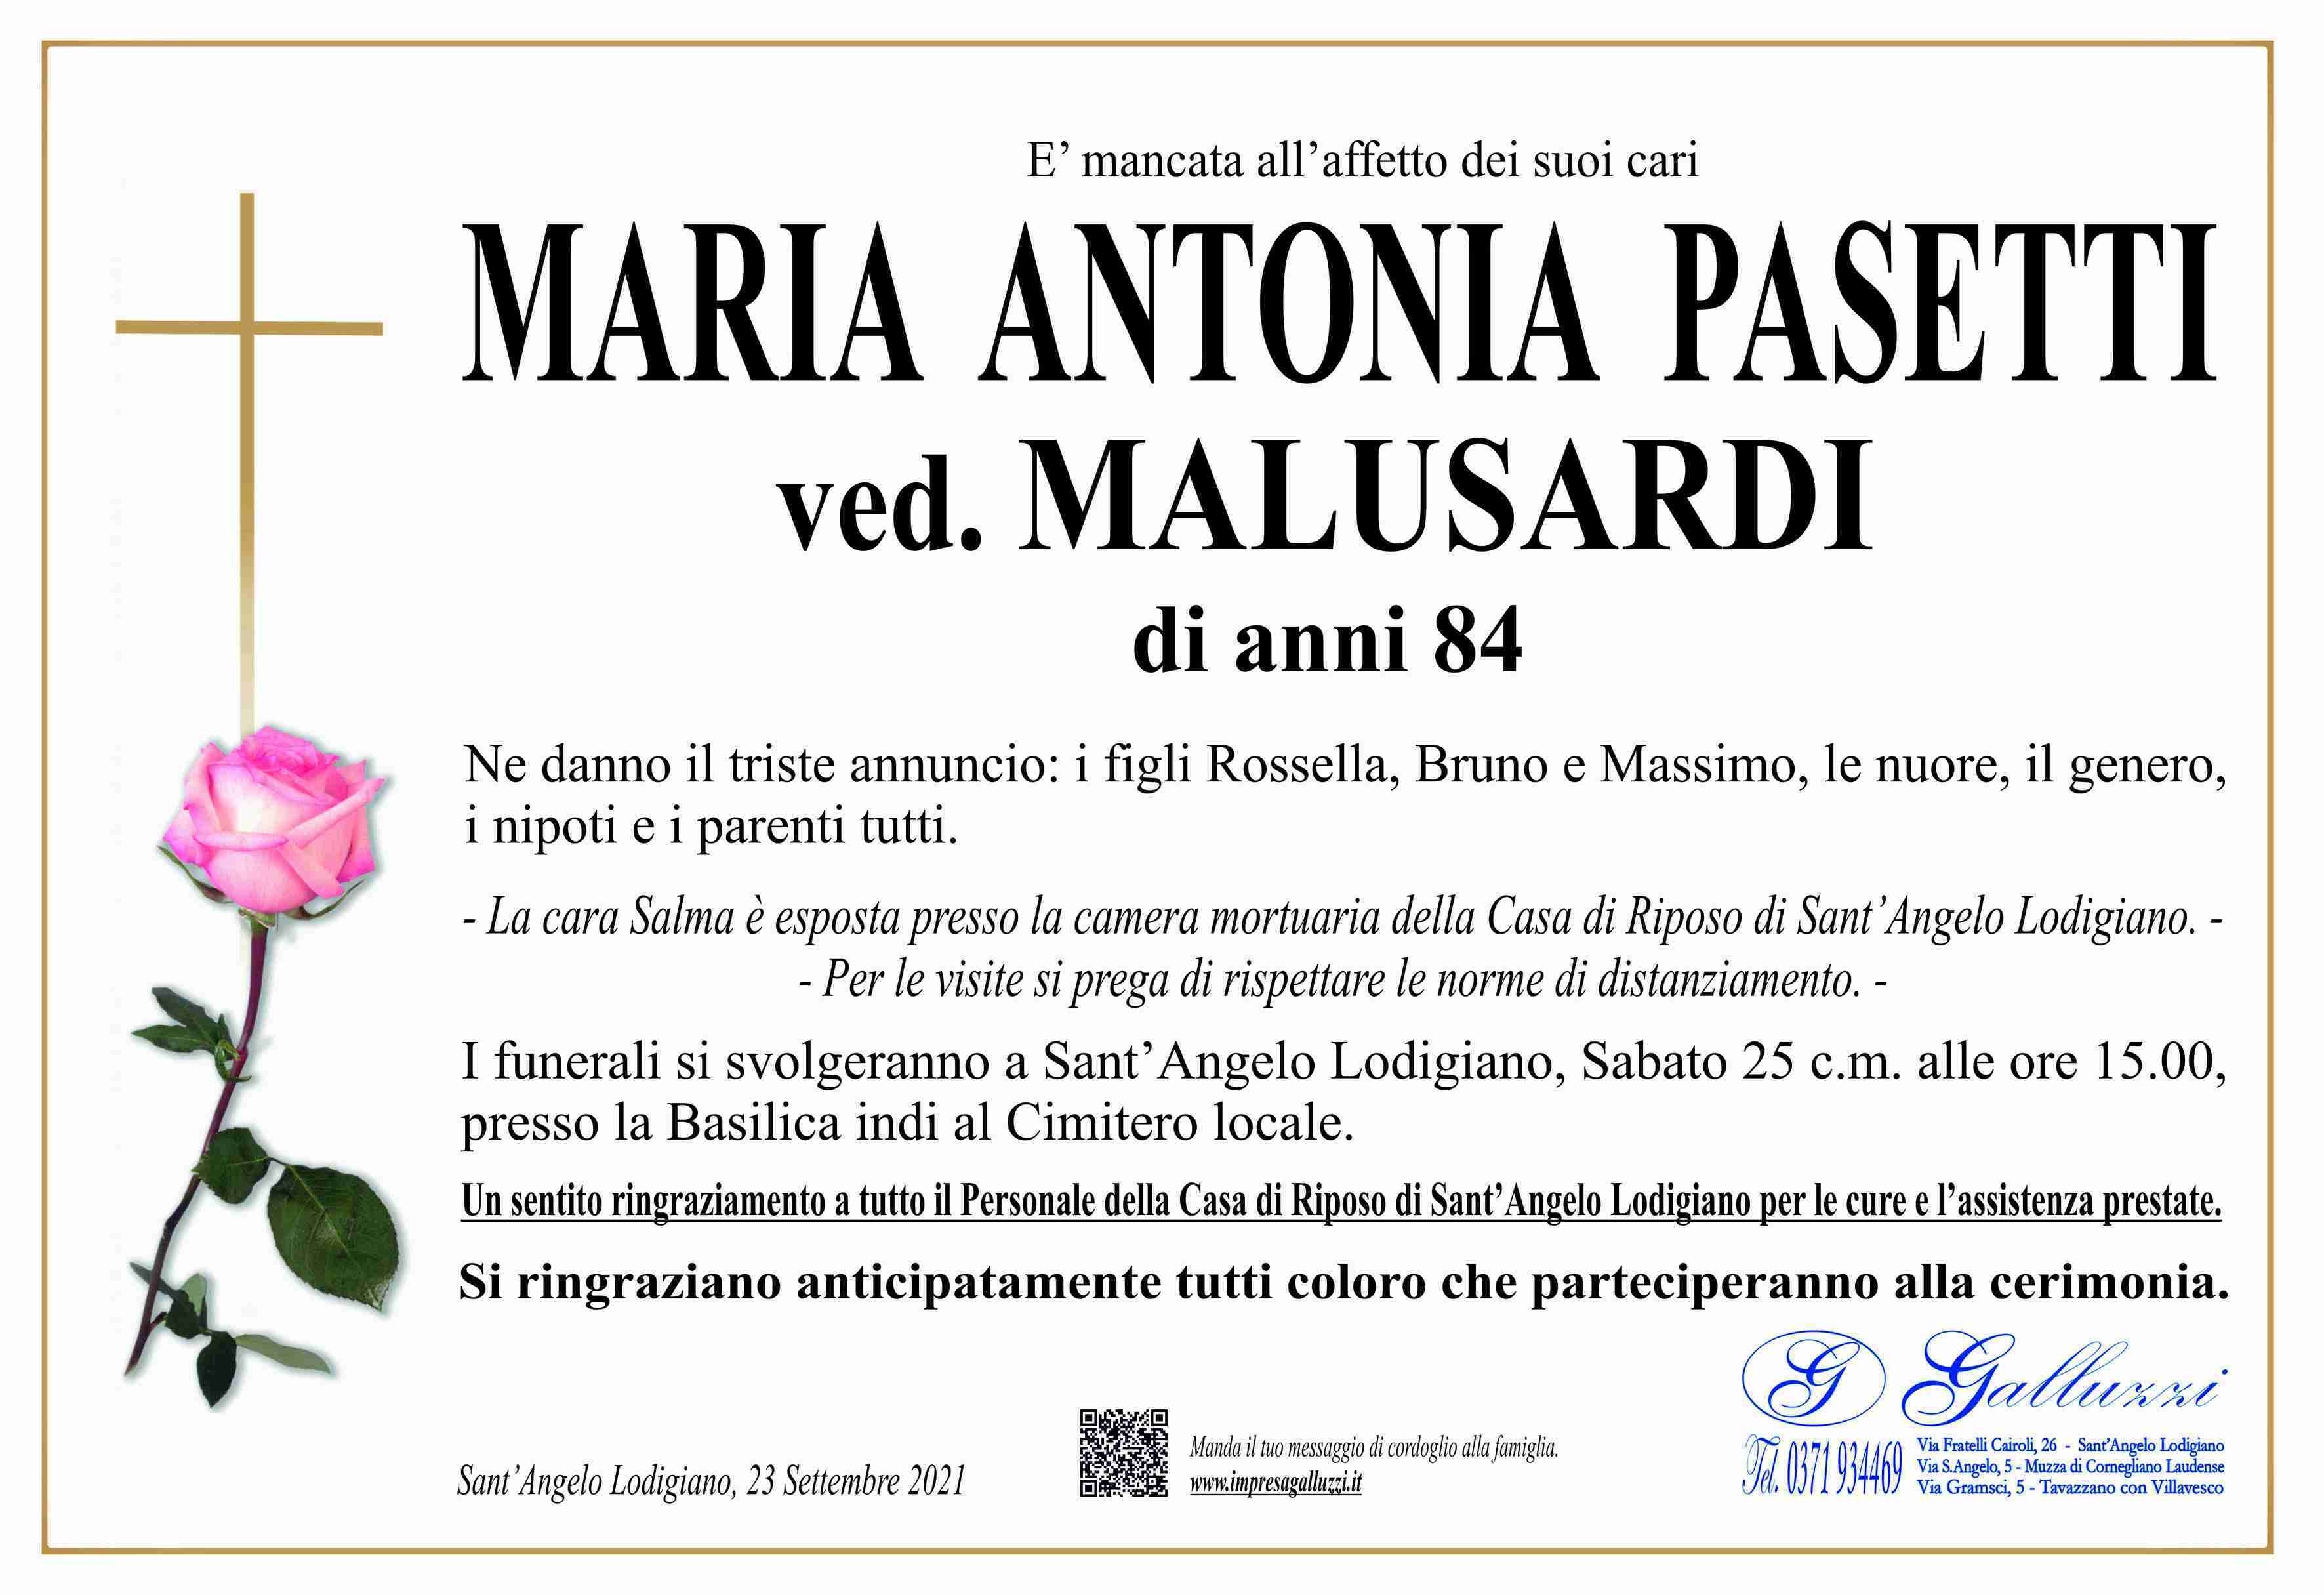 Maria Antonia Pasetti